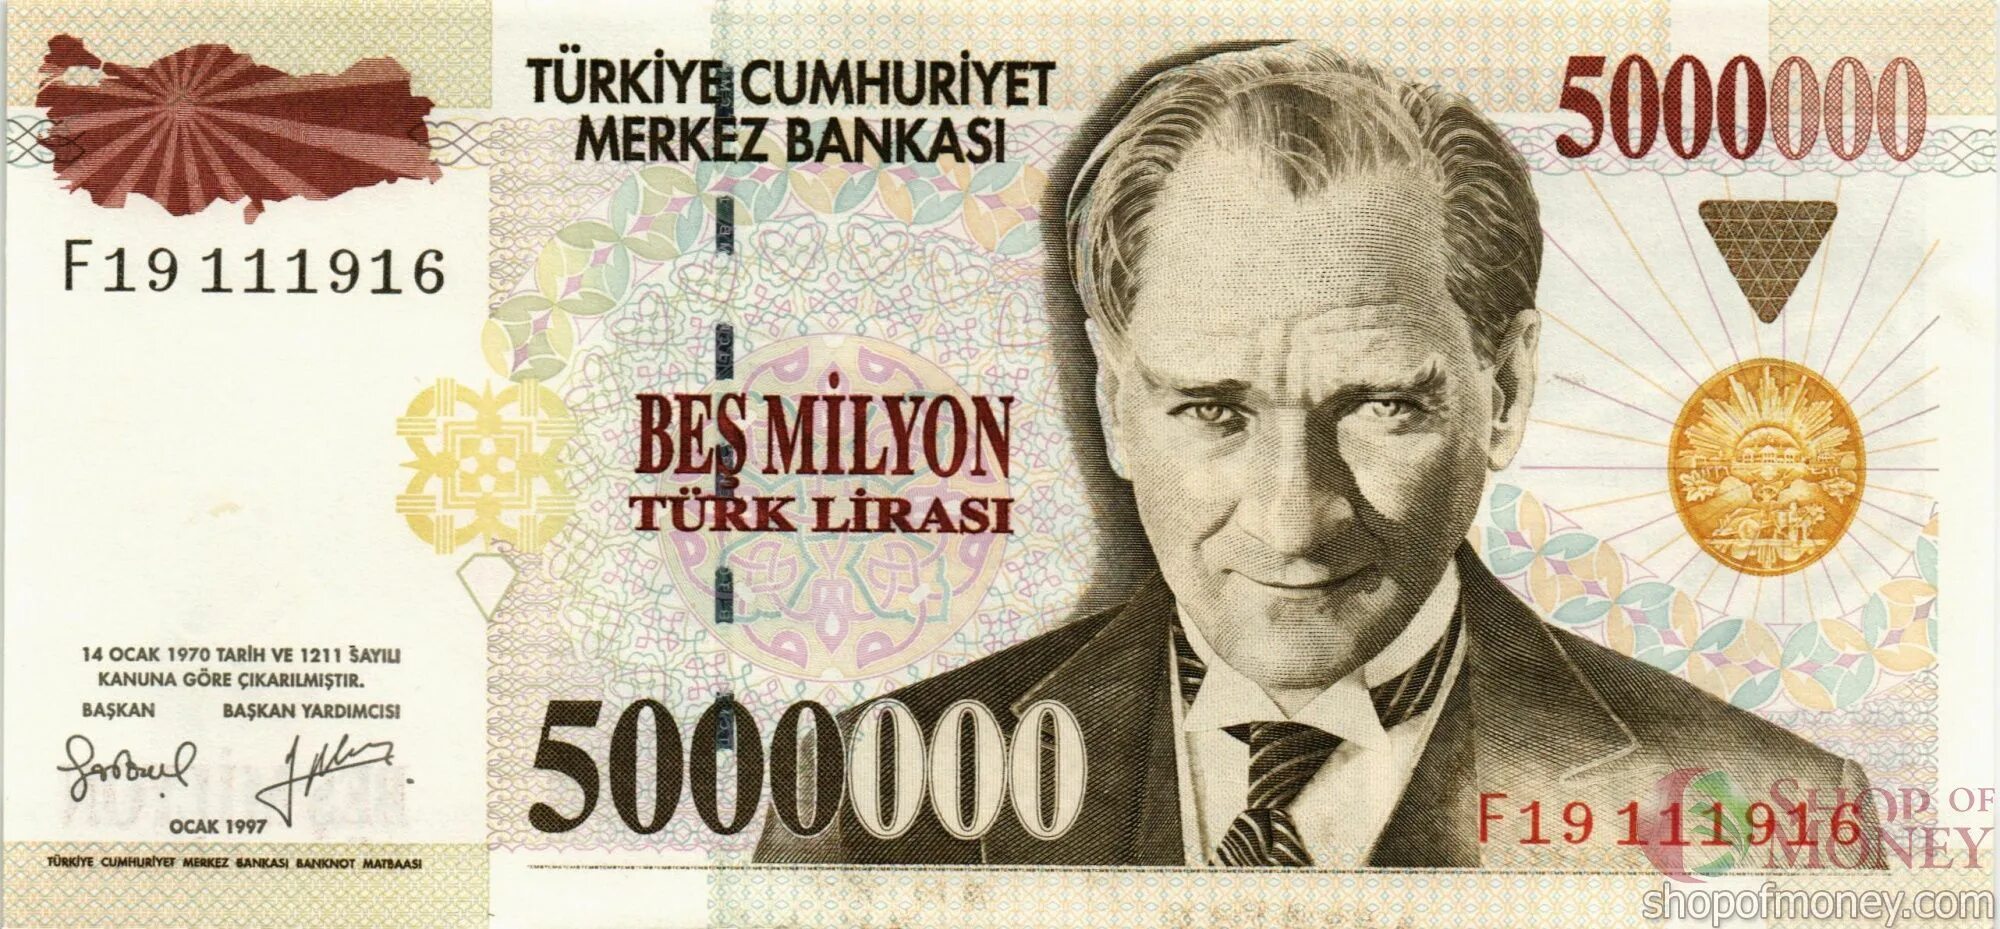 5000000 рублей в долларах. Турецкие Лиры 5000000 1997 года. Турецкие купюры 5 лир купюра. Турецкая Лира банкноты. Банкнота 5 турецких лир.